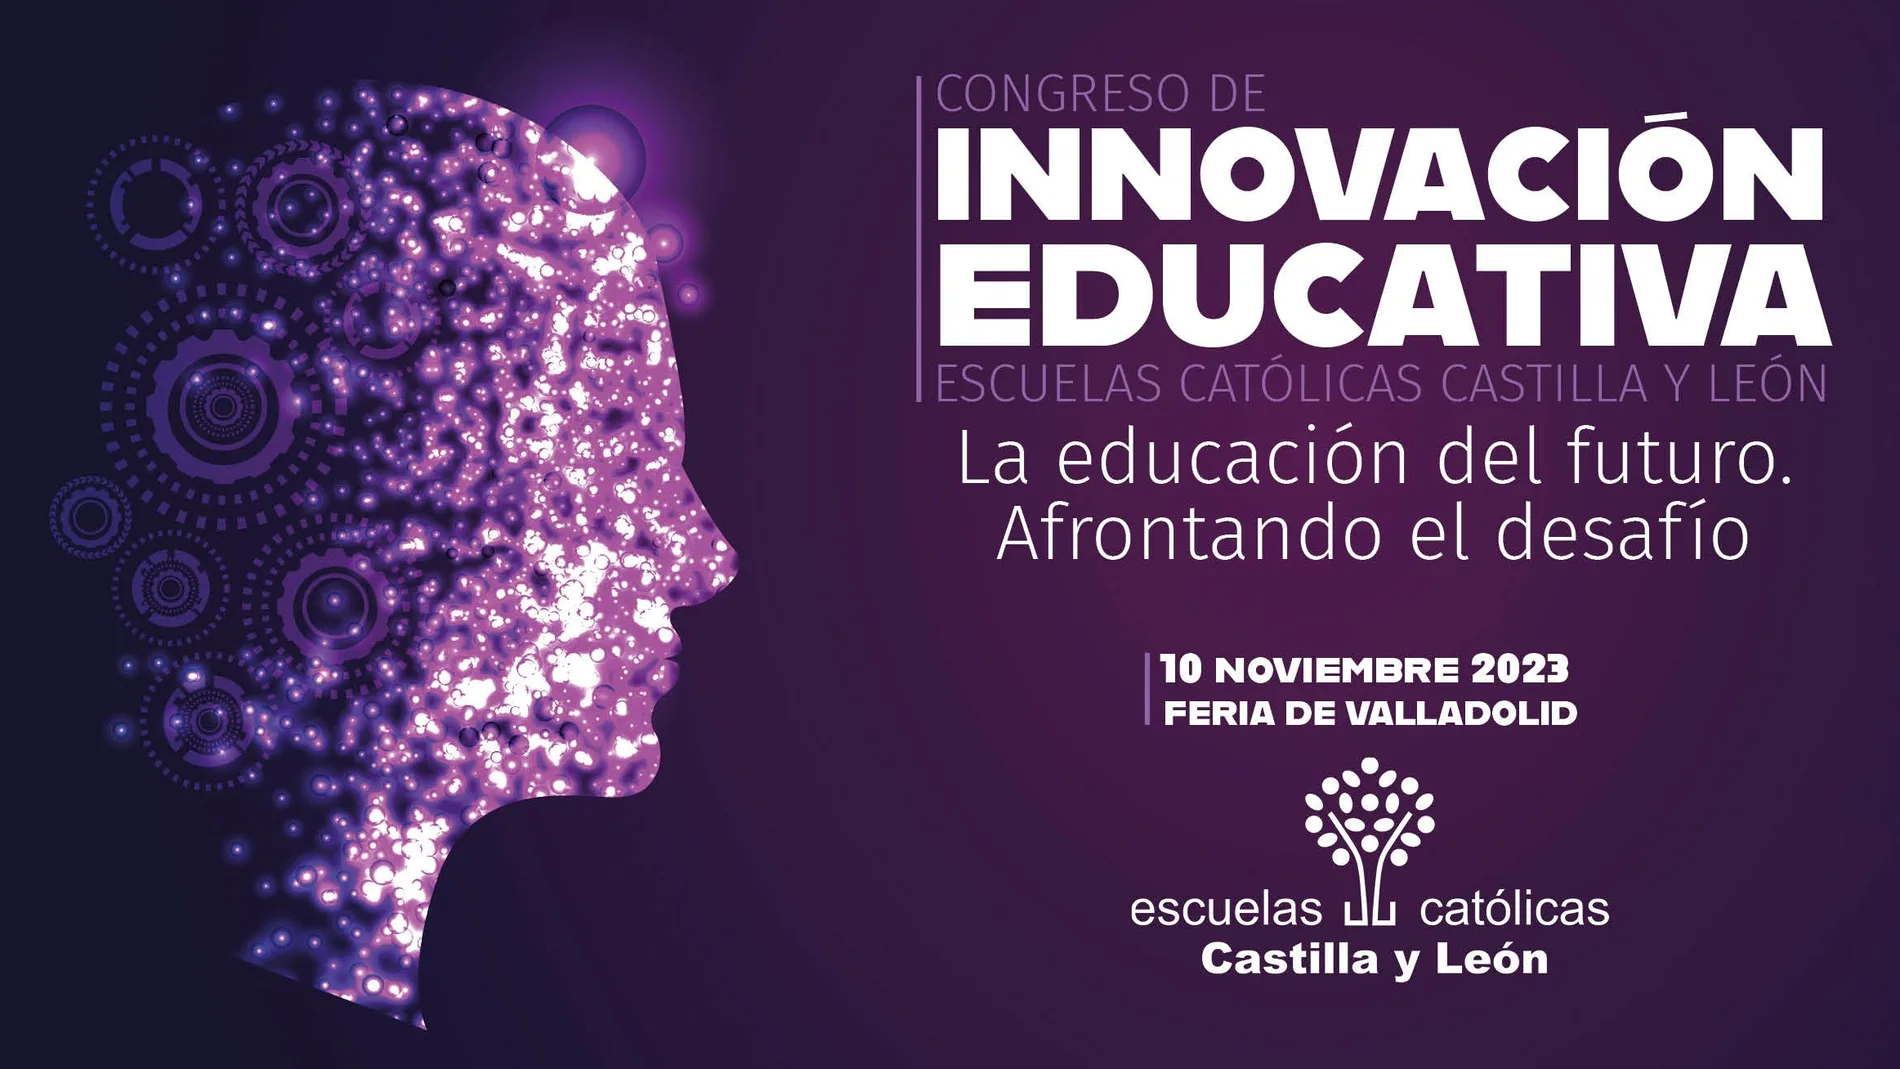 nteligencia artificial en las aulas, el nuevo desafío escolar que analizará el Congreso de Innovación Educativa 2023 de Escuelas Católicas Castilla y León